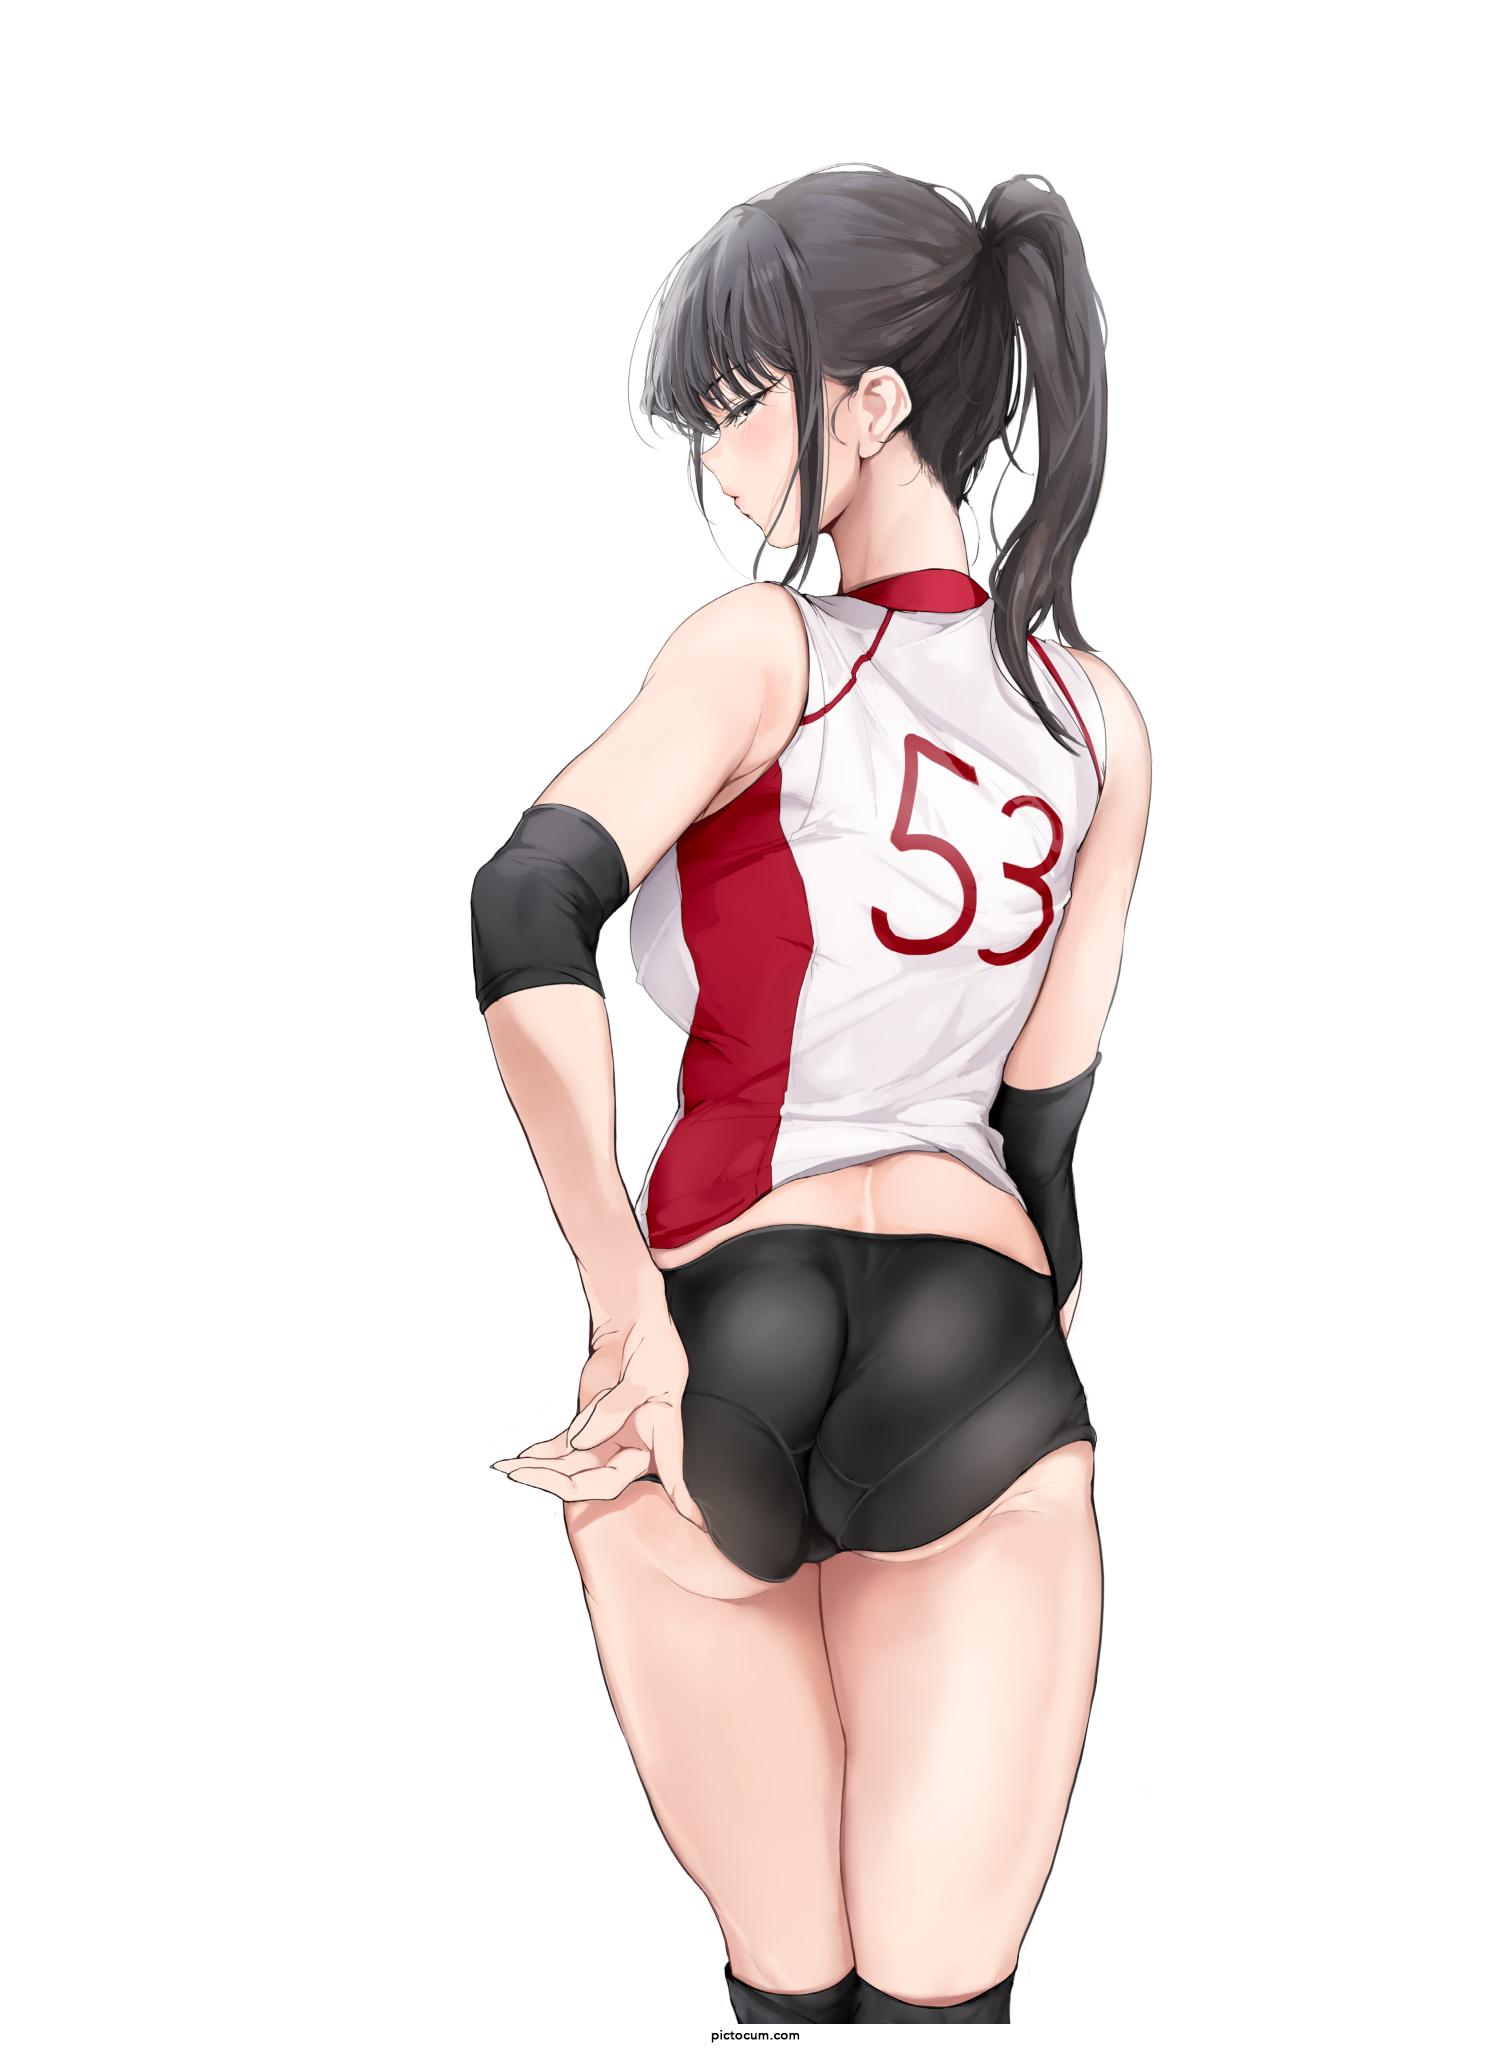 Komi playing volleyball